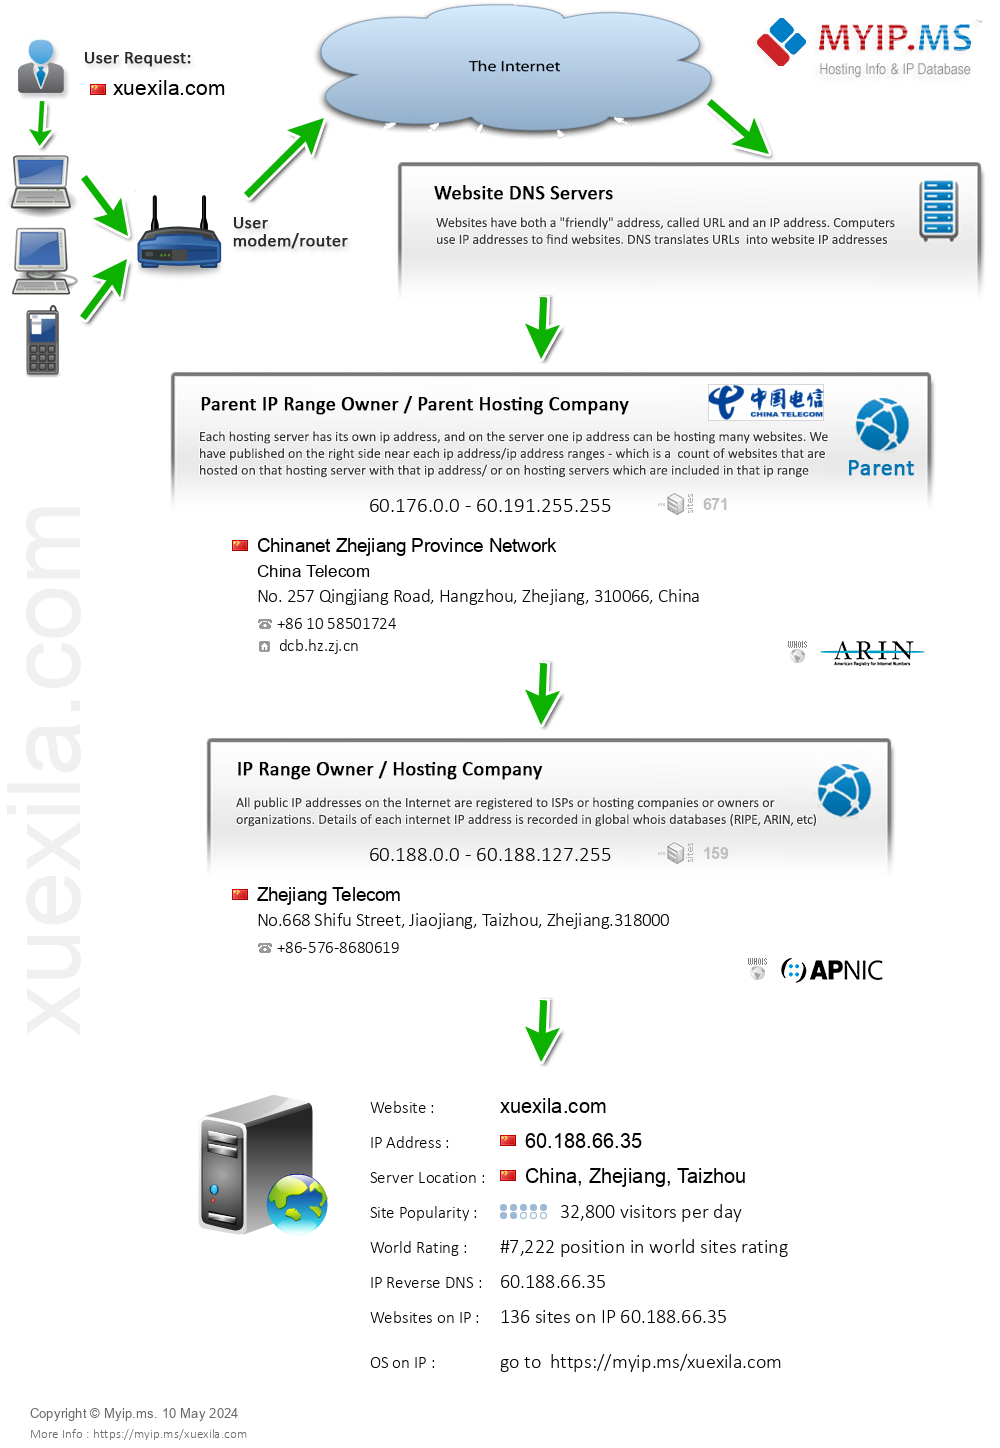 Xuexila.com - Website Hosting Visual IP Diagram